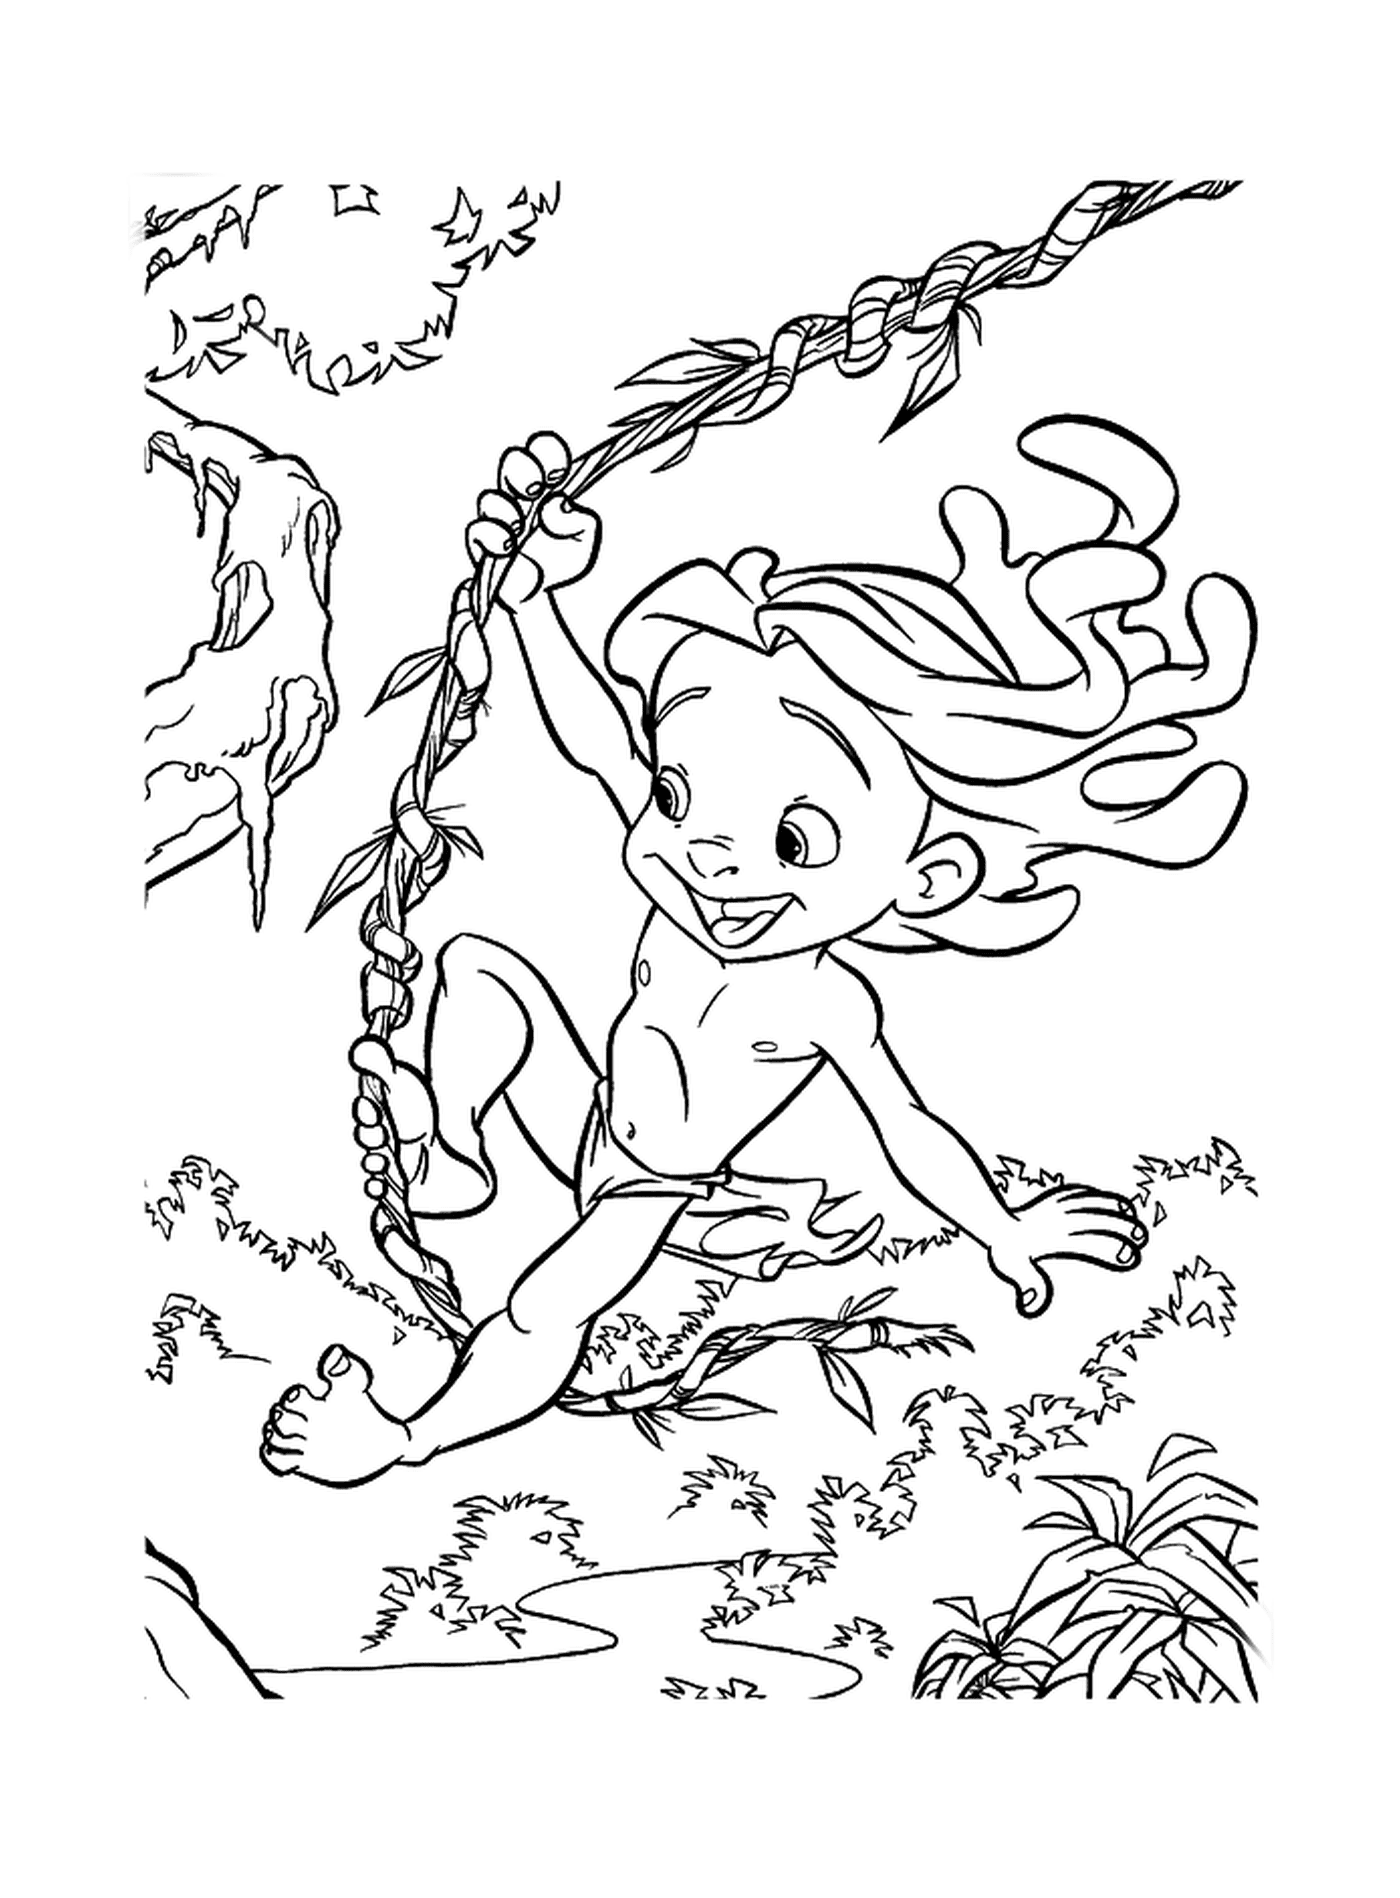  Bambino che dondola su un ramo d'albero 